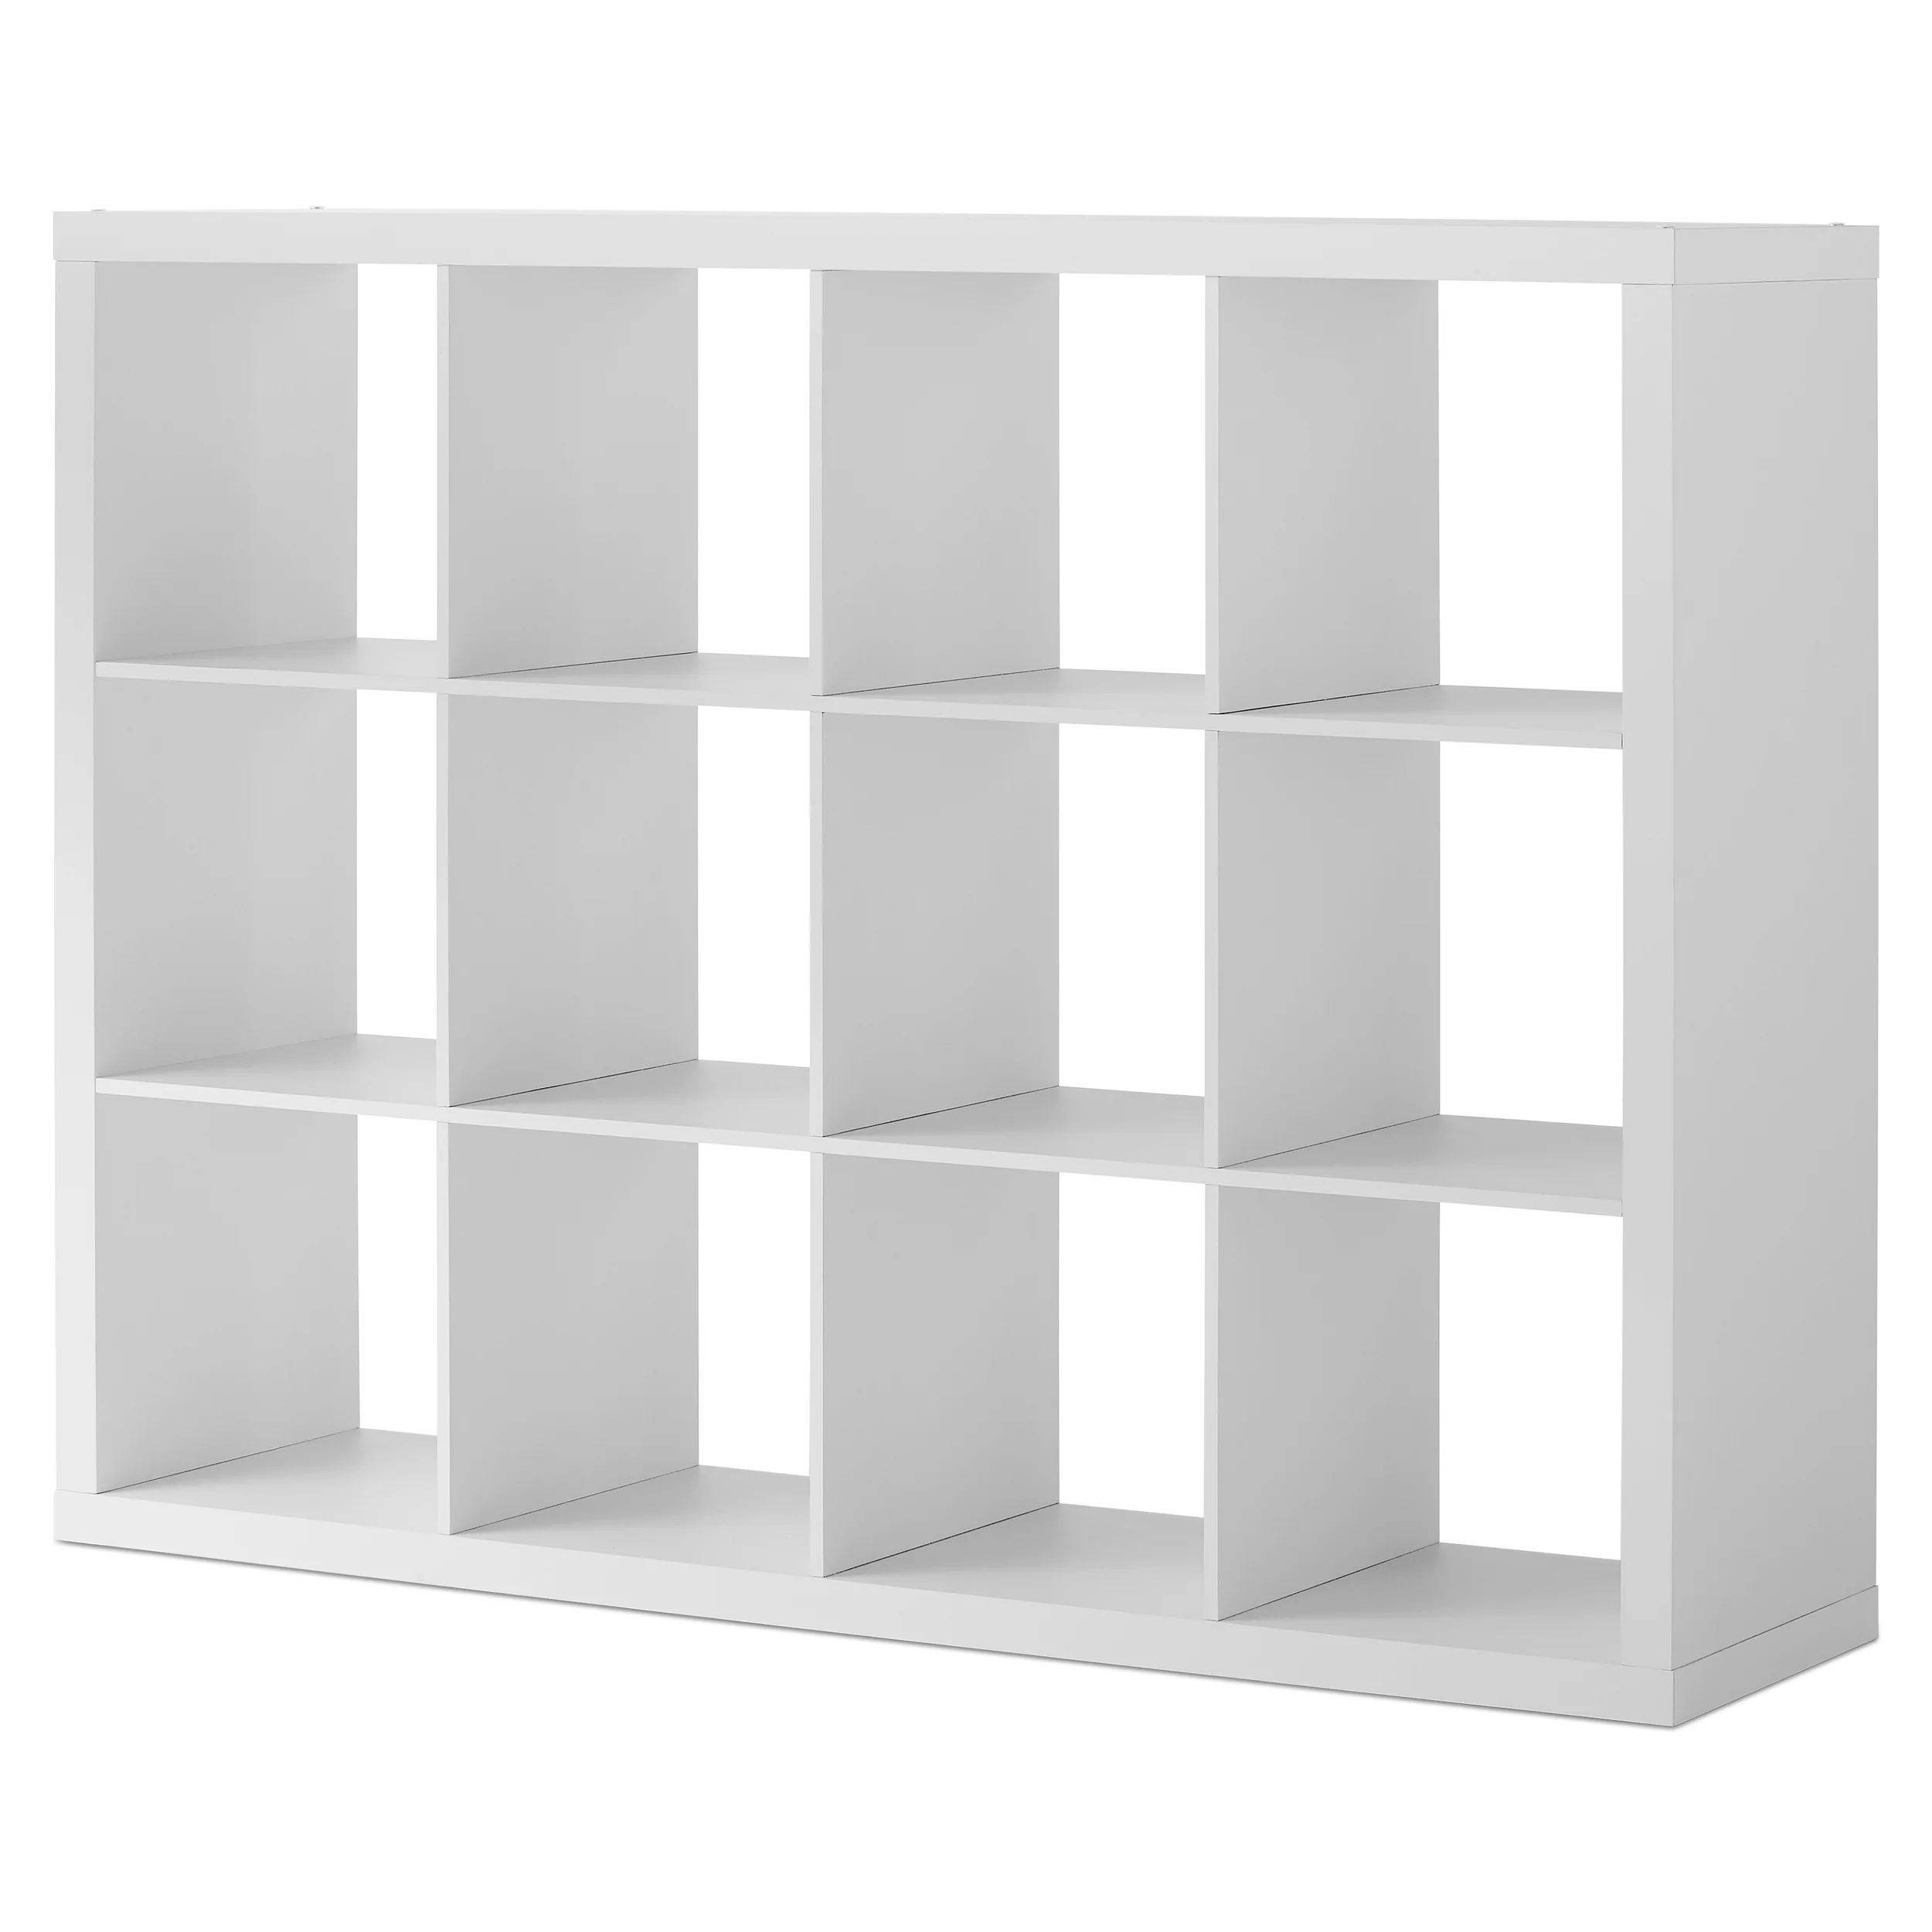 Better Homes & Gardens 12-Cube Storage Organizer, Textured White - Walmart.com | Walmart (US)